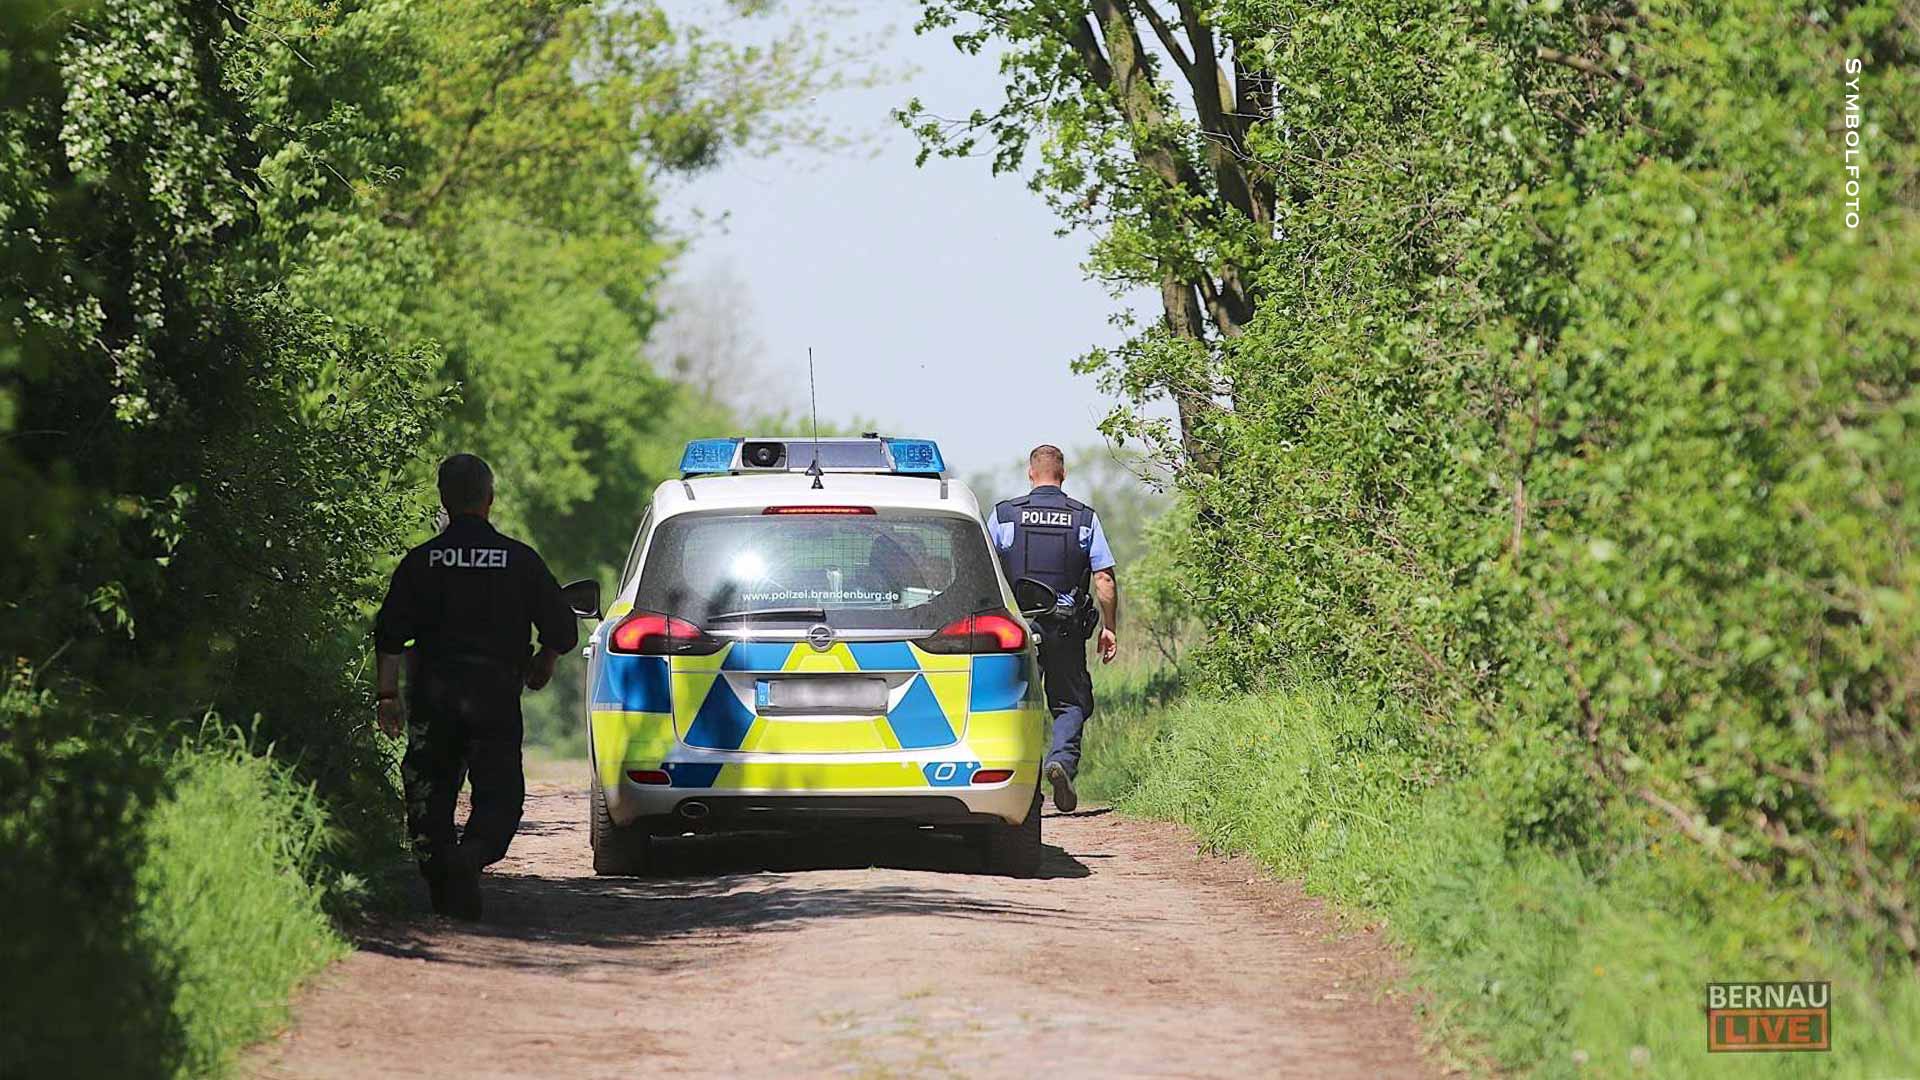 Vermisst - Personensuche in Basdorf - Polizei bittet um Mithilfe (Foto im Beitrag)